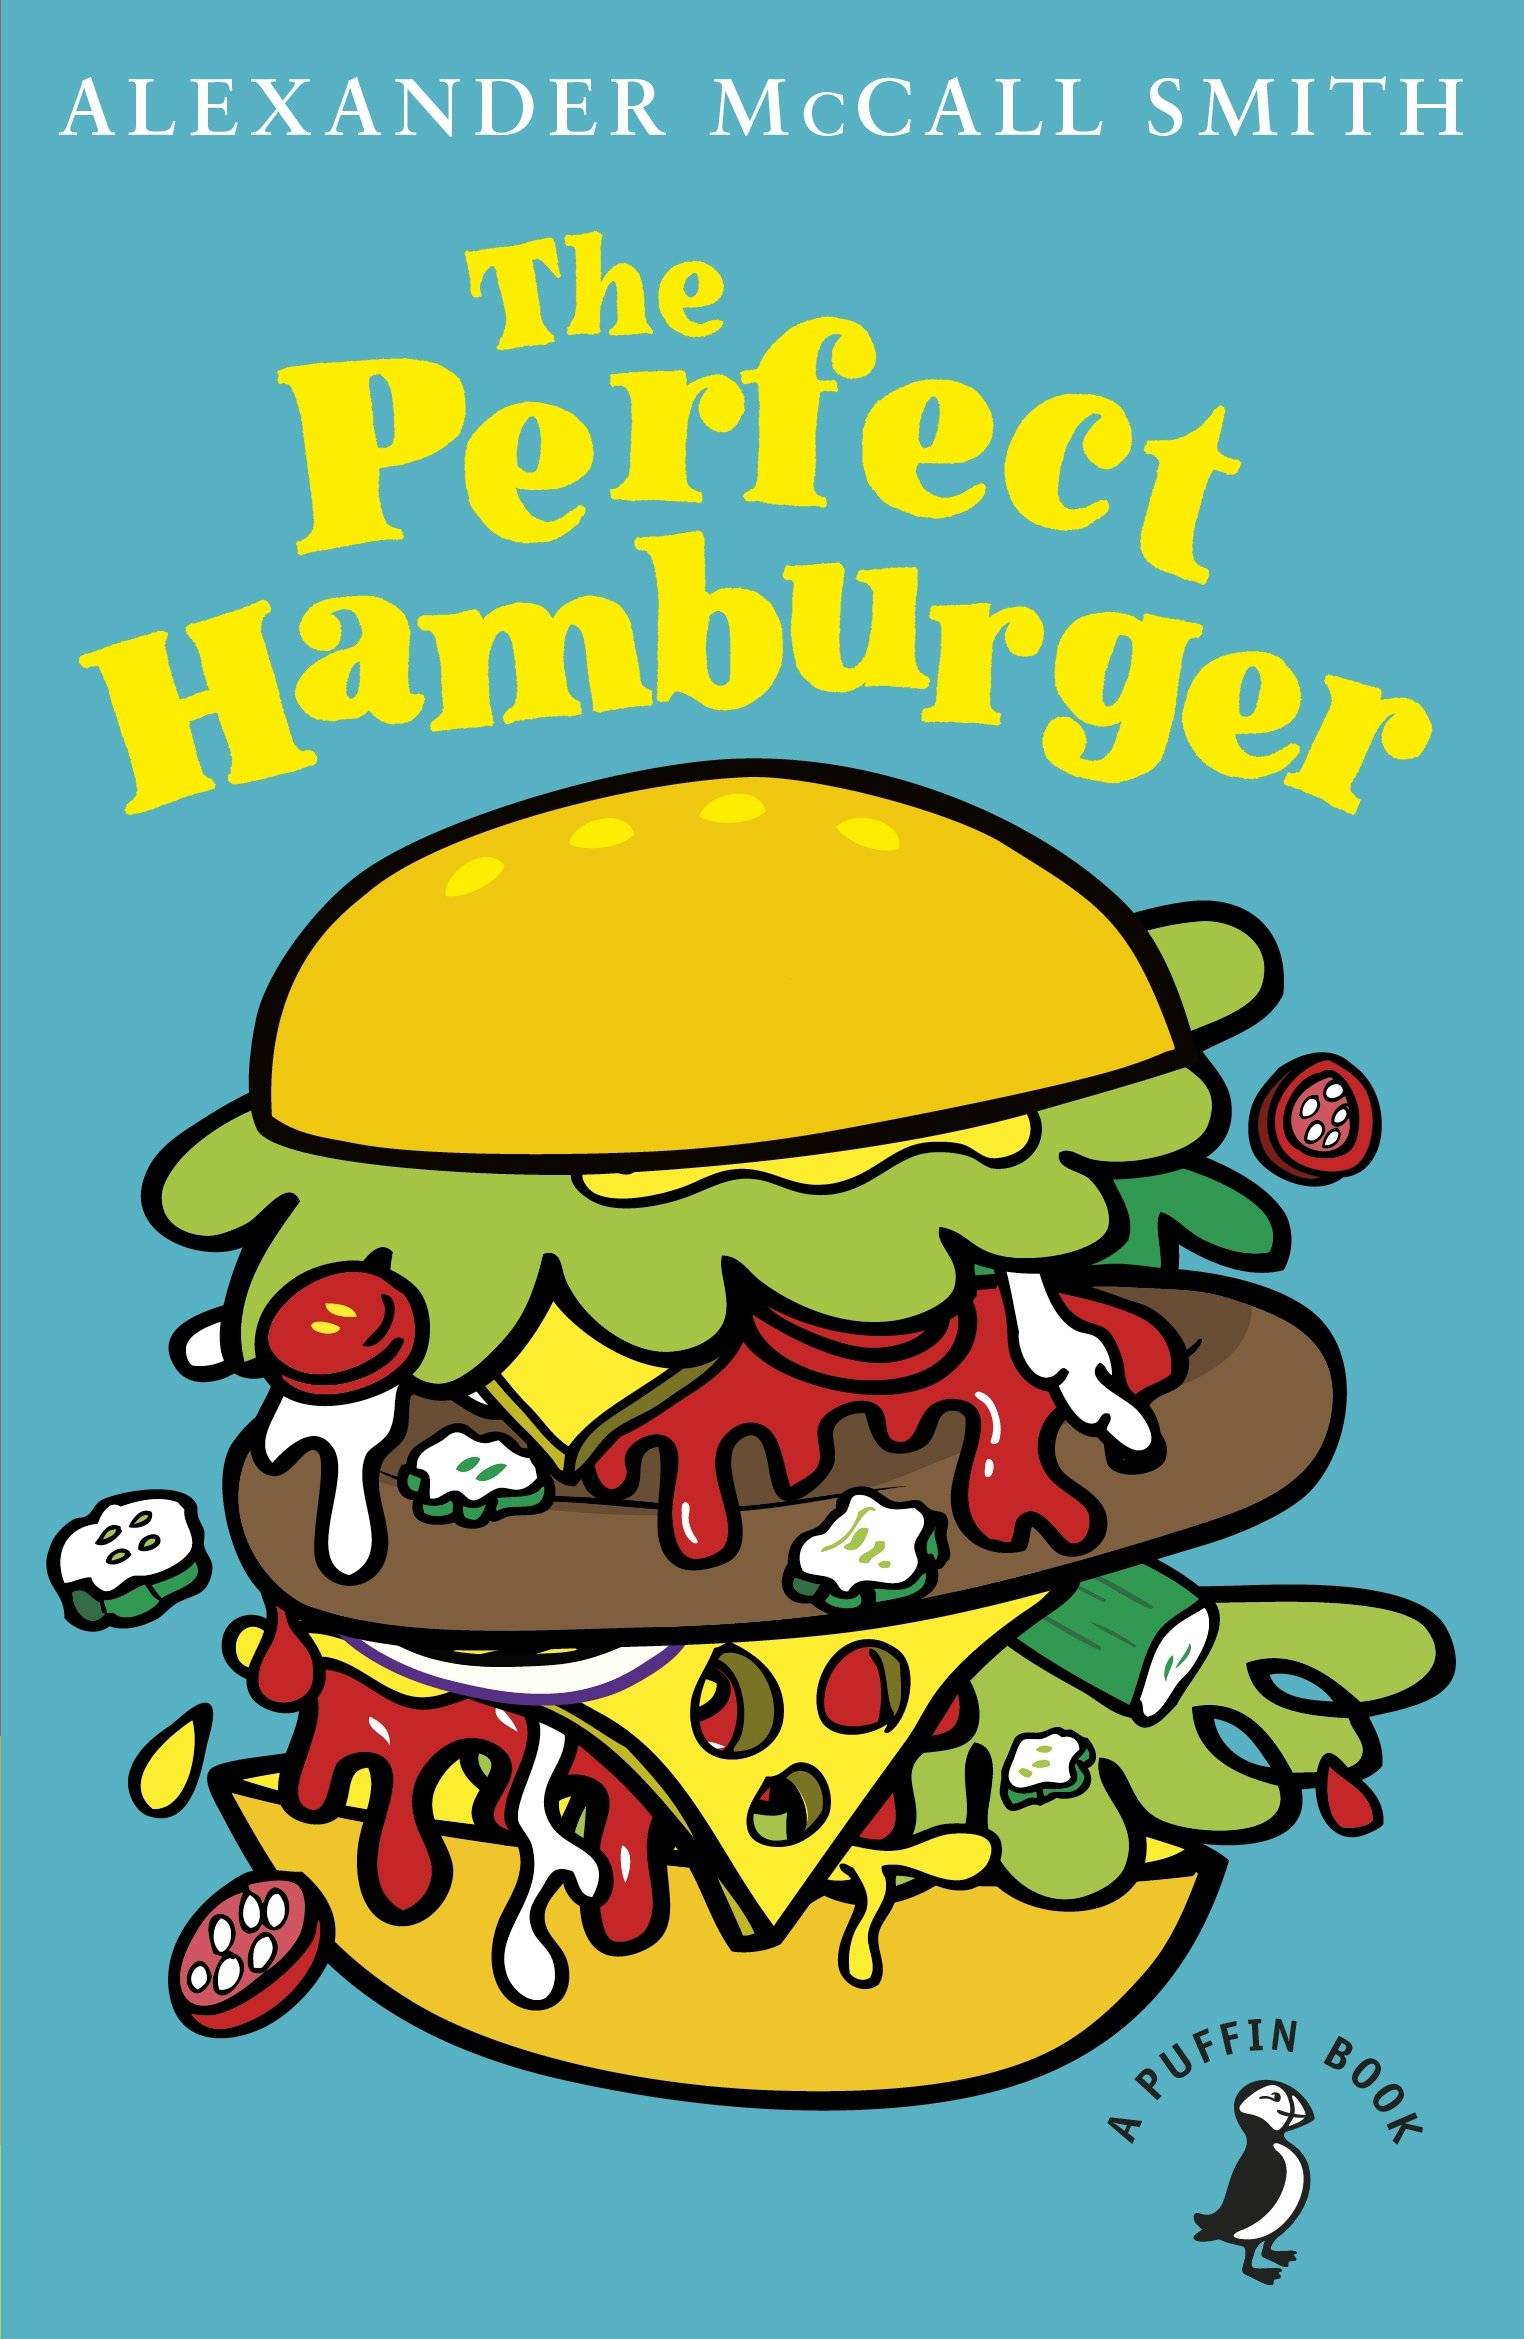 IMG : The perfect Hamburger